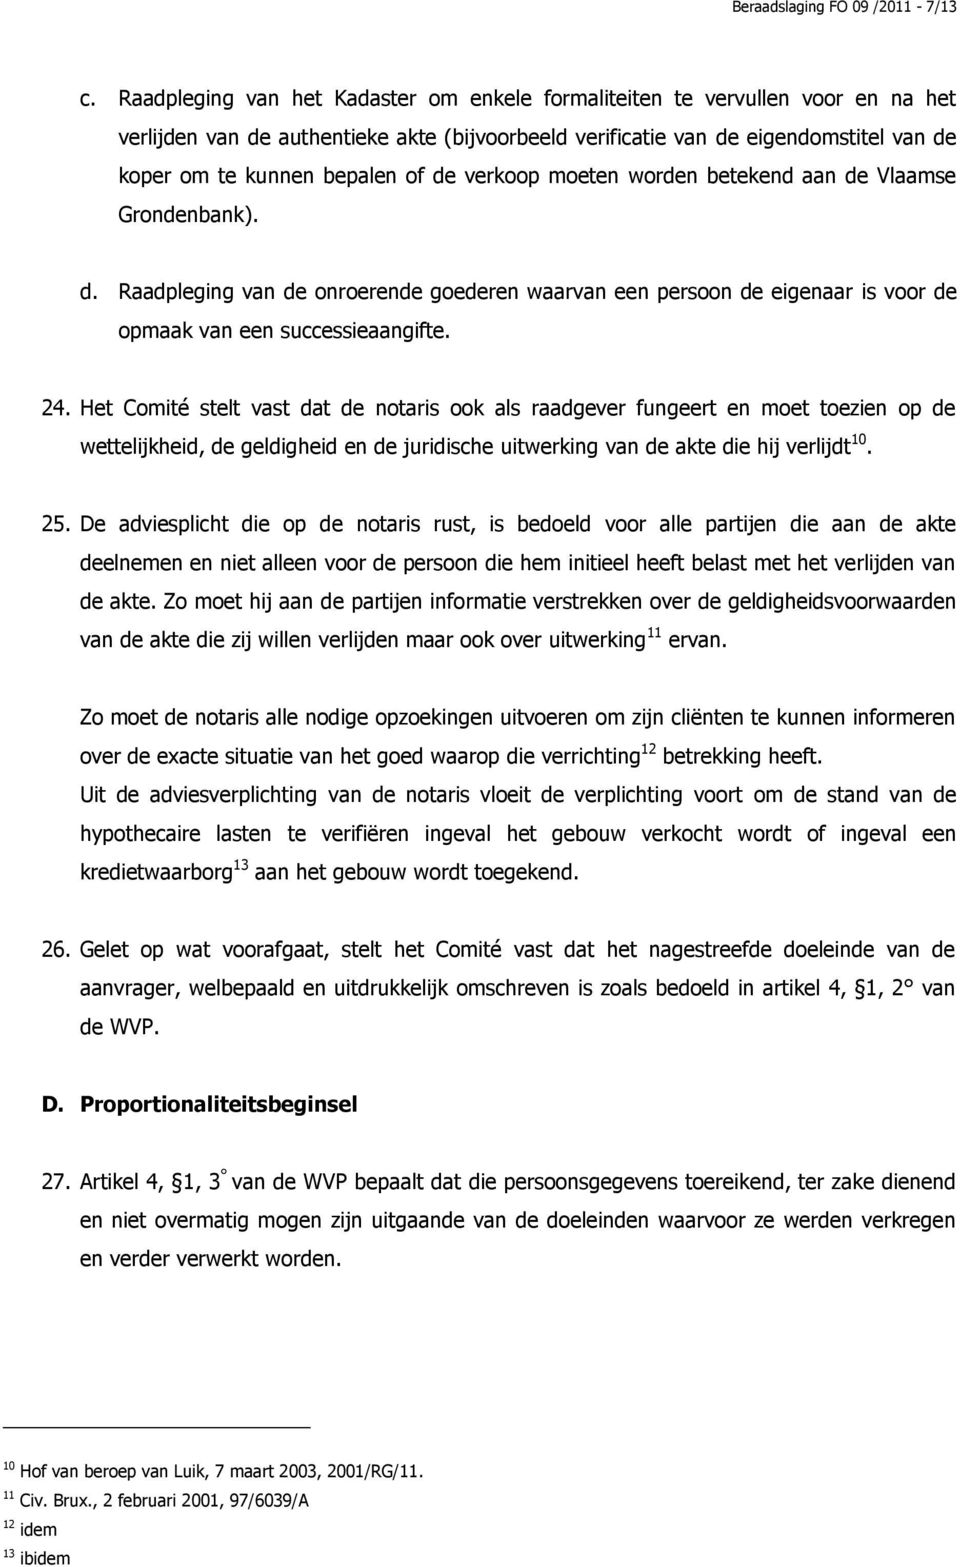 de verkoop moeten worden betekend aan de Vlaamse Grondenbank). d. Raadpleging van de onroerende goederen waarvan een persoon de eigenaar is voor de opmaak van een successieaangifte. 24.